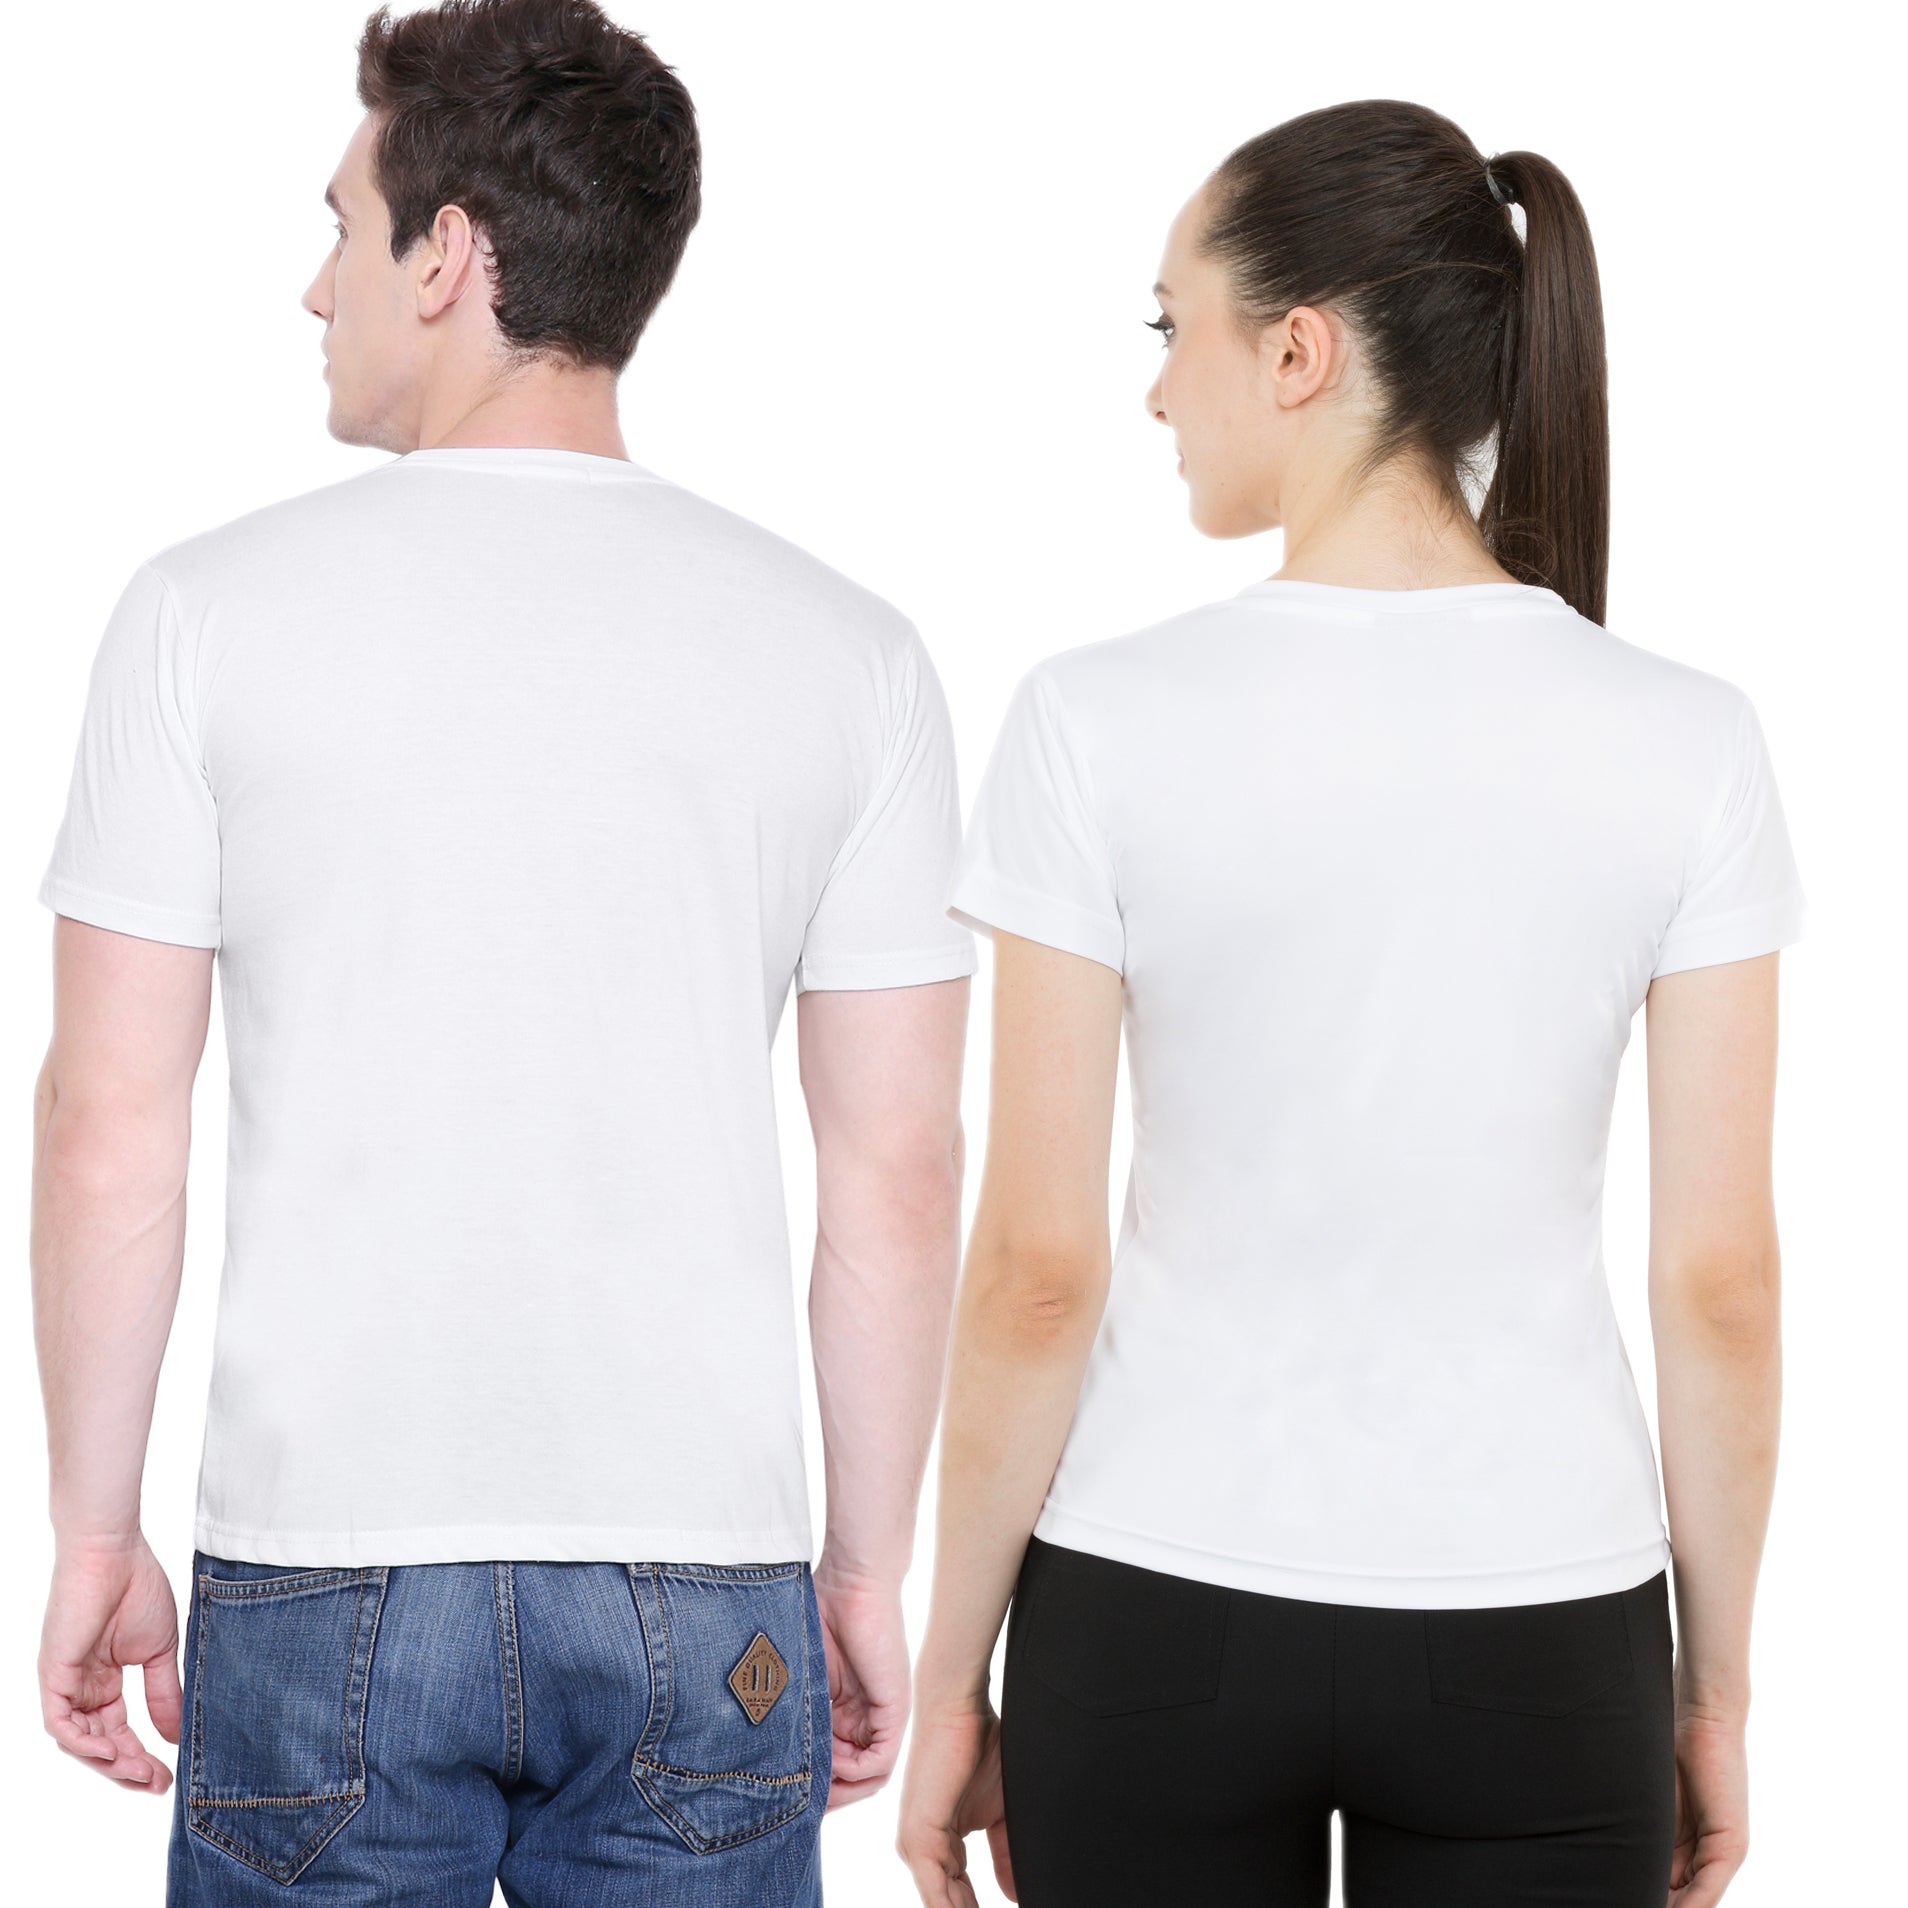 Heartbeat matching Couple T shirts- White